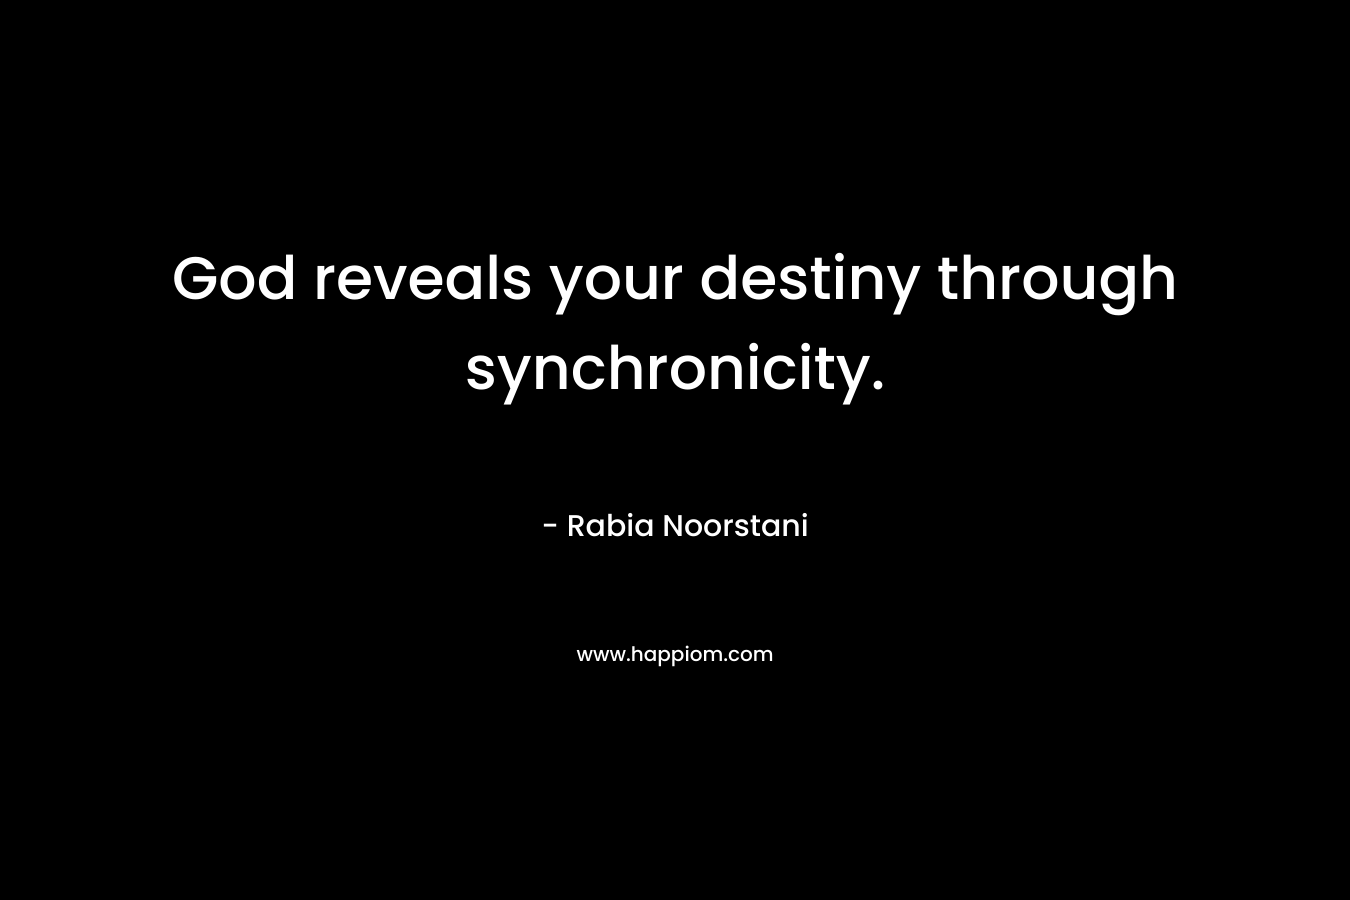 God reveals your destiny through synchronicity.